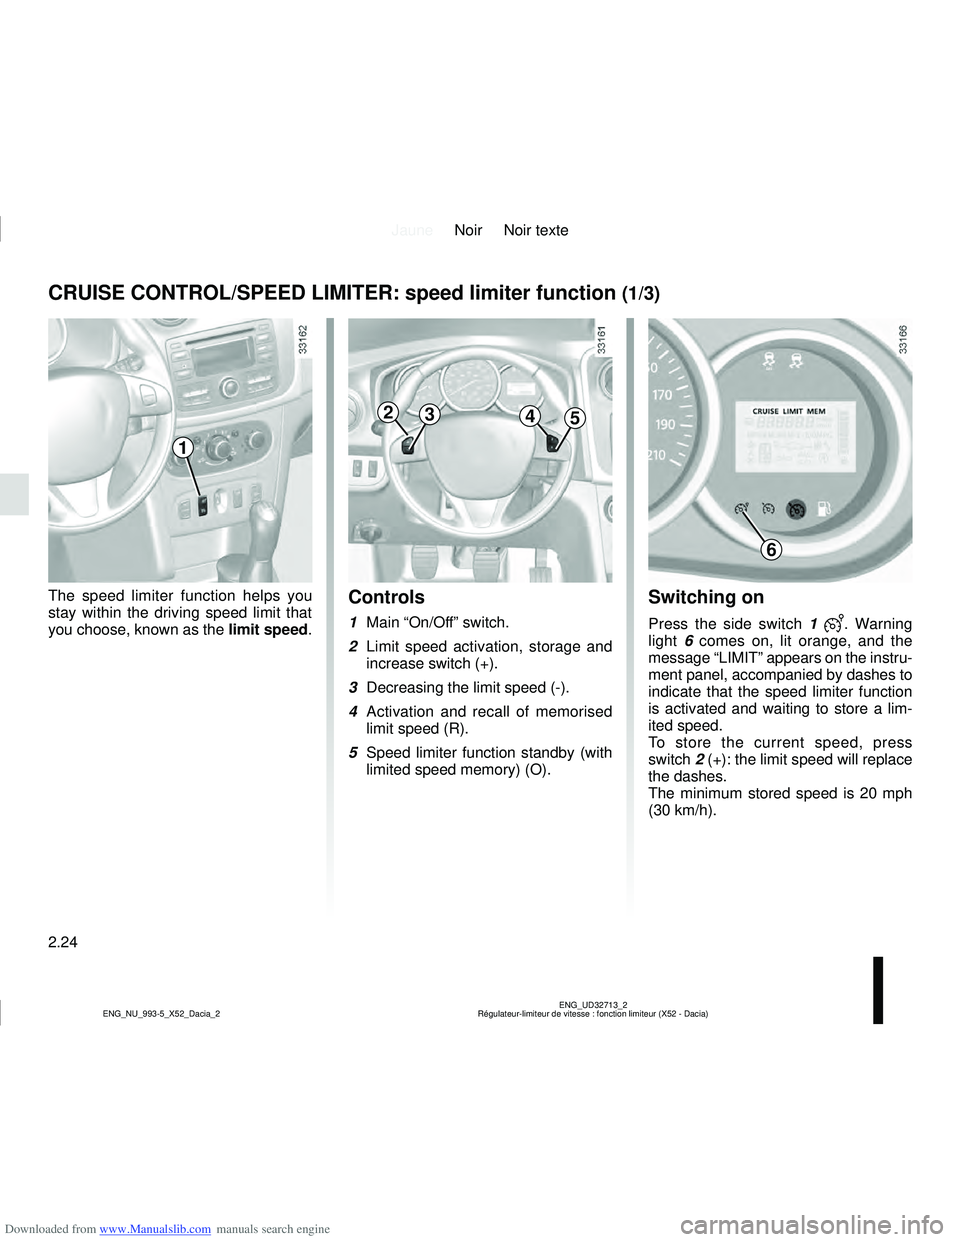 DACIA LOGAN 2014 Owners Guide Downloaded from www.Manualslib.com manuals search engine JauneNoir Noir texte
2.24
ENG_UD32713_2
Régulateur-limiteur de vitesse : fonction limiteur (X52 - Dacia)
ENG_NU_993-5_X52_Dacia_2
Switching on